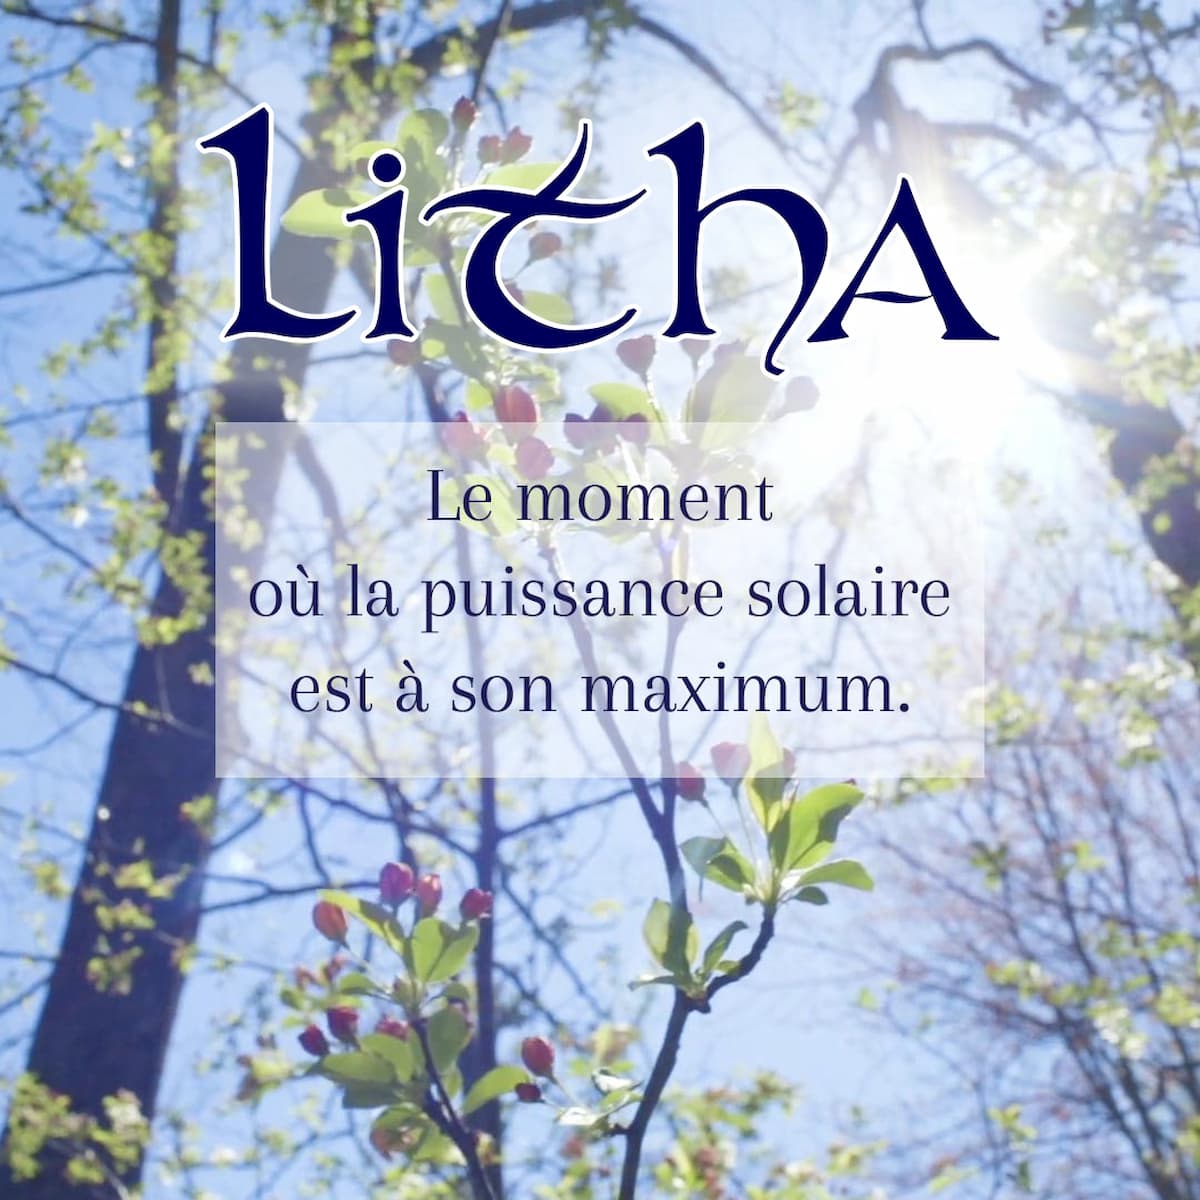 Litha, sabbat du solstice d'été, un ciel bleu sous le soleil rayonnant dans une forêt